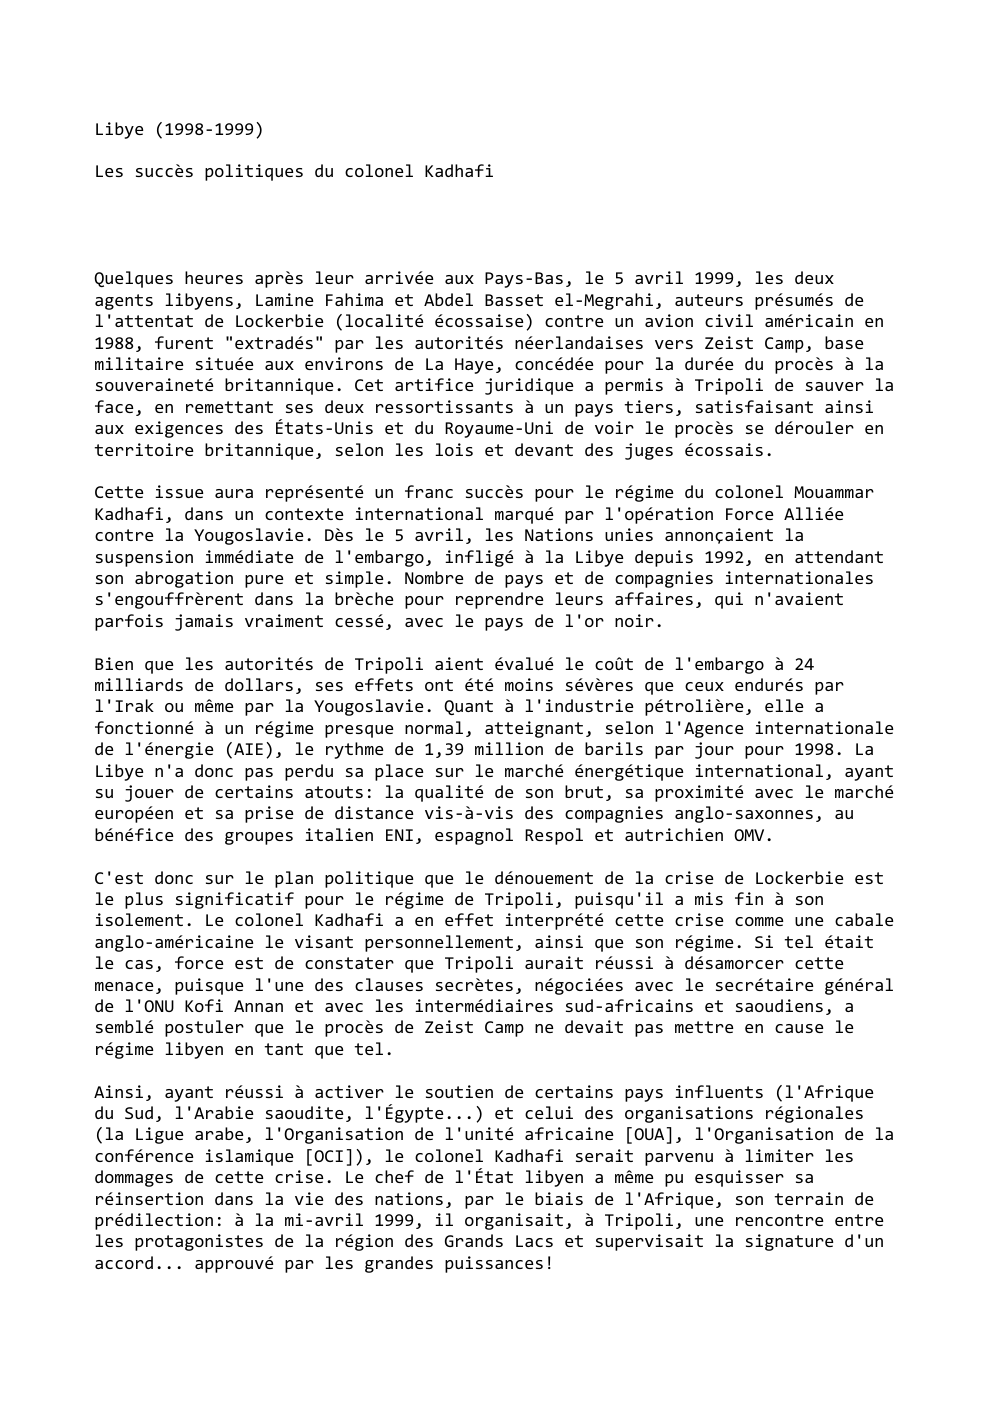 Prévisualisation du document Libye (1998-1999)
Les succès politiques du colonel Kadhafi

Quelques heures après leur arrivée aux Pays-Bas, le 5 avril 1999, les...